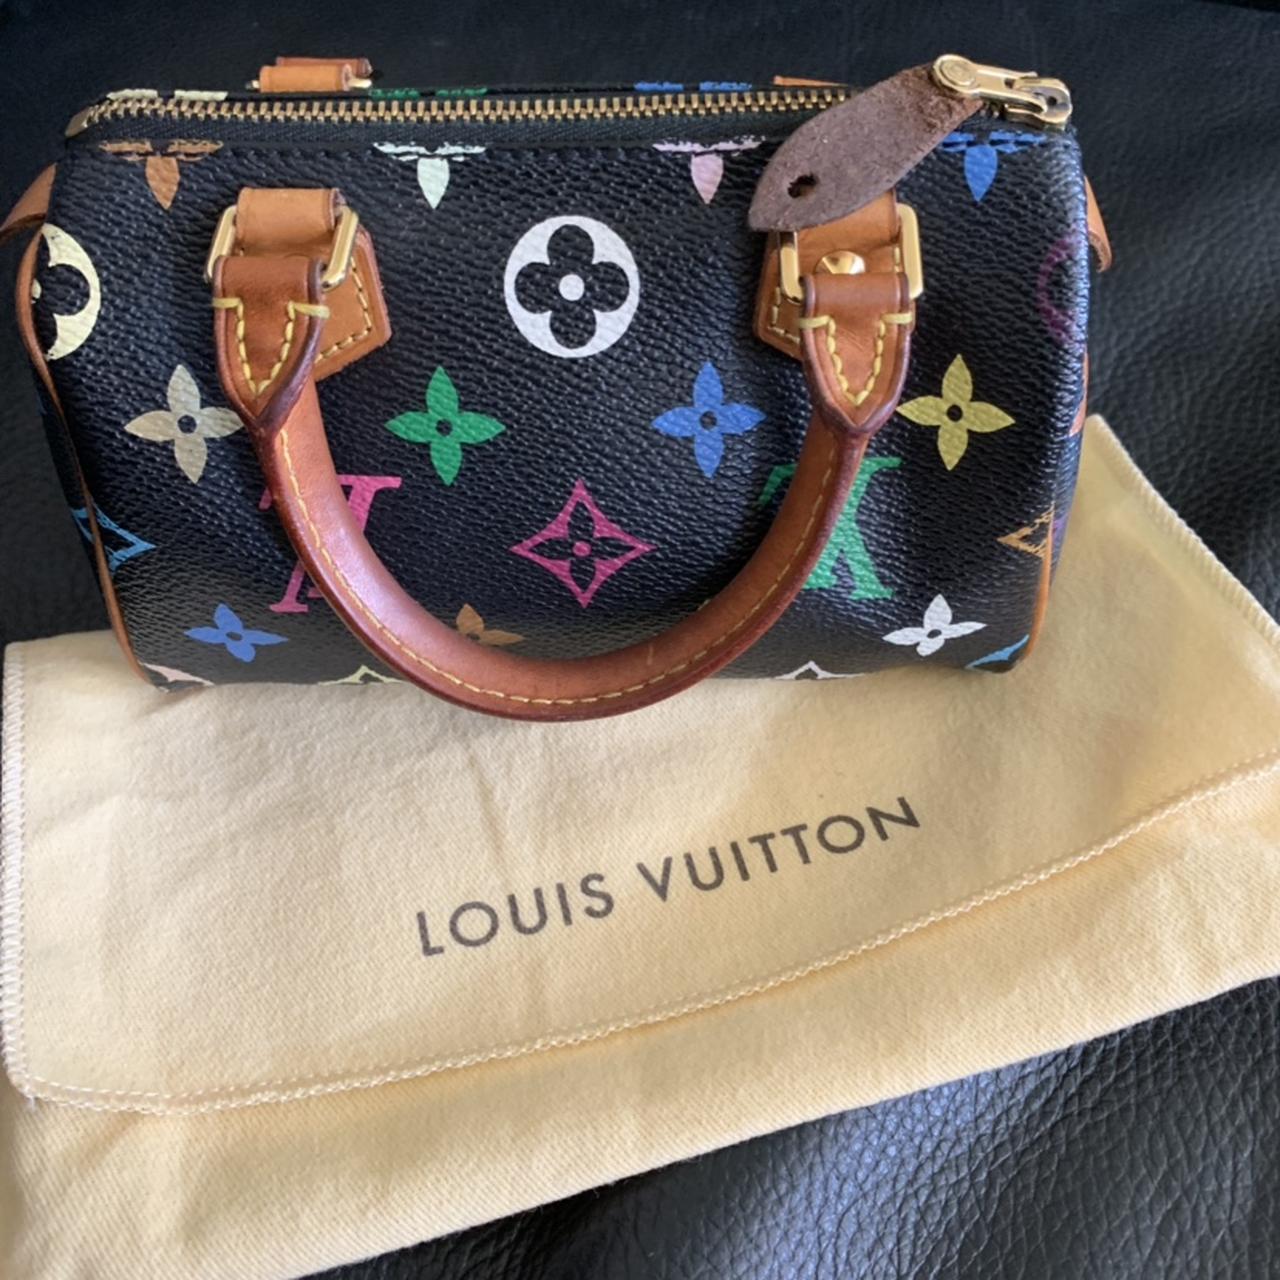 100% authentic Louis Vuitton Black Multicolor - Depop